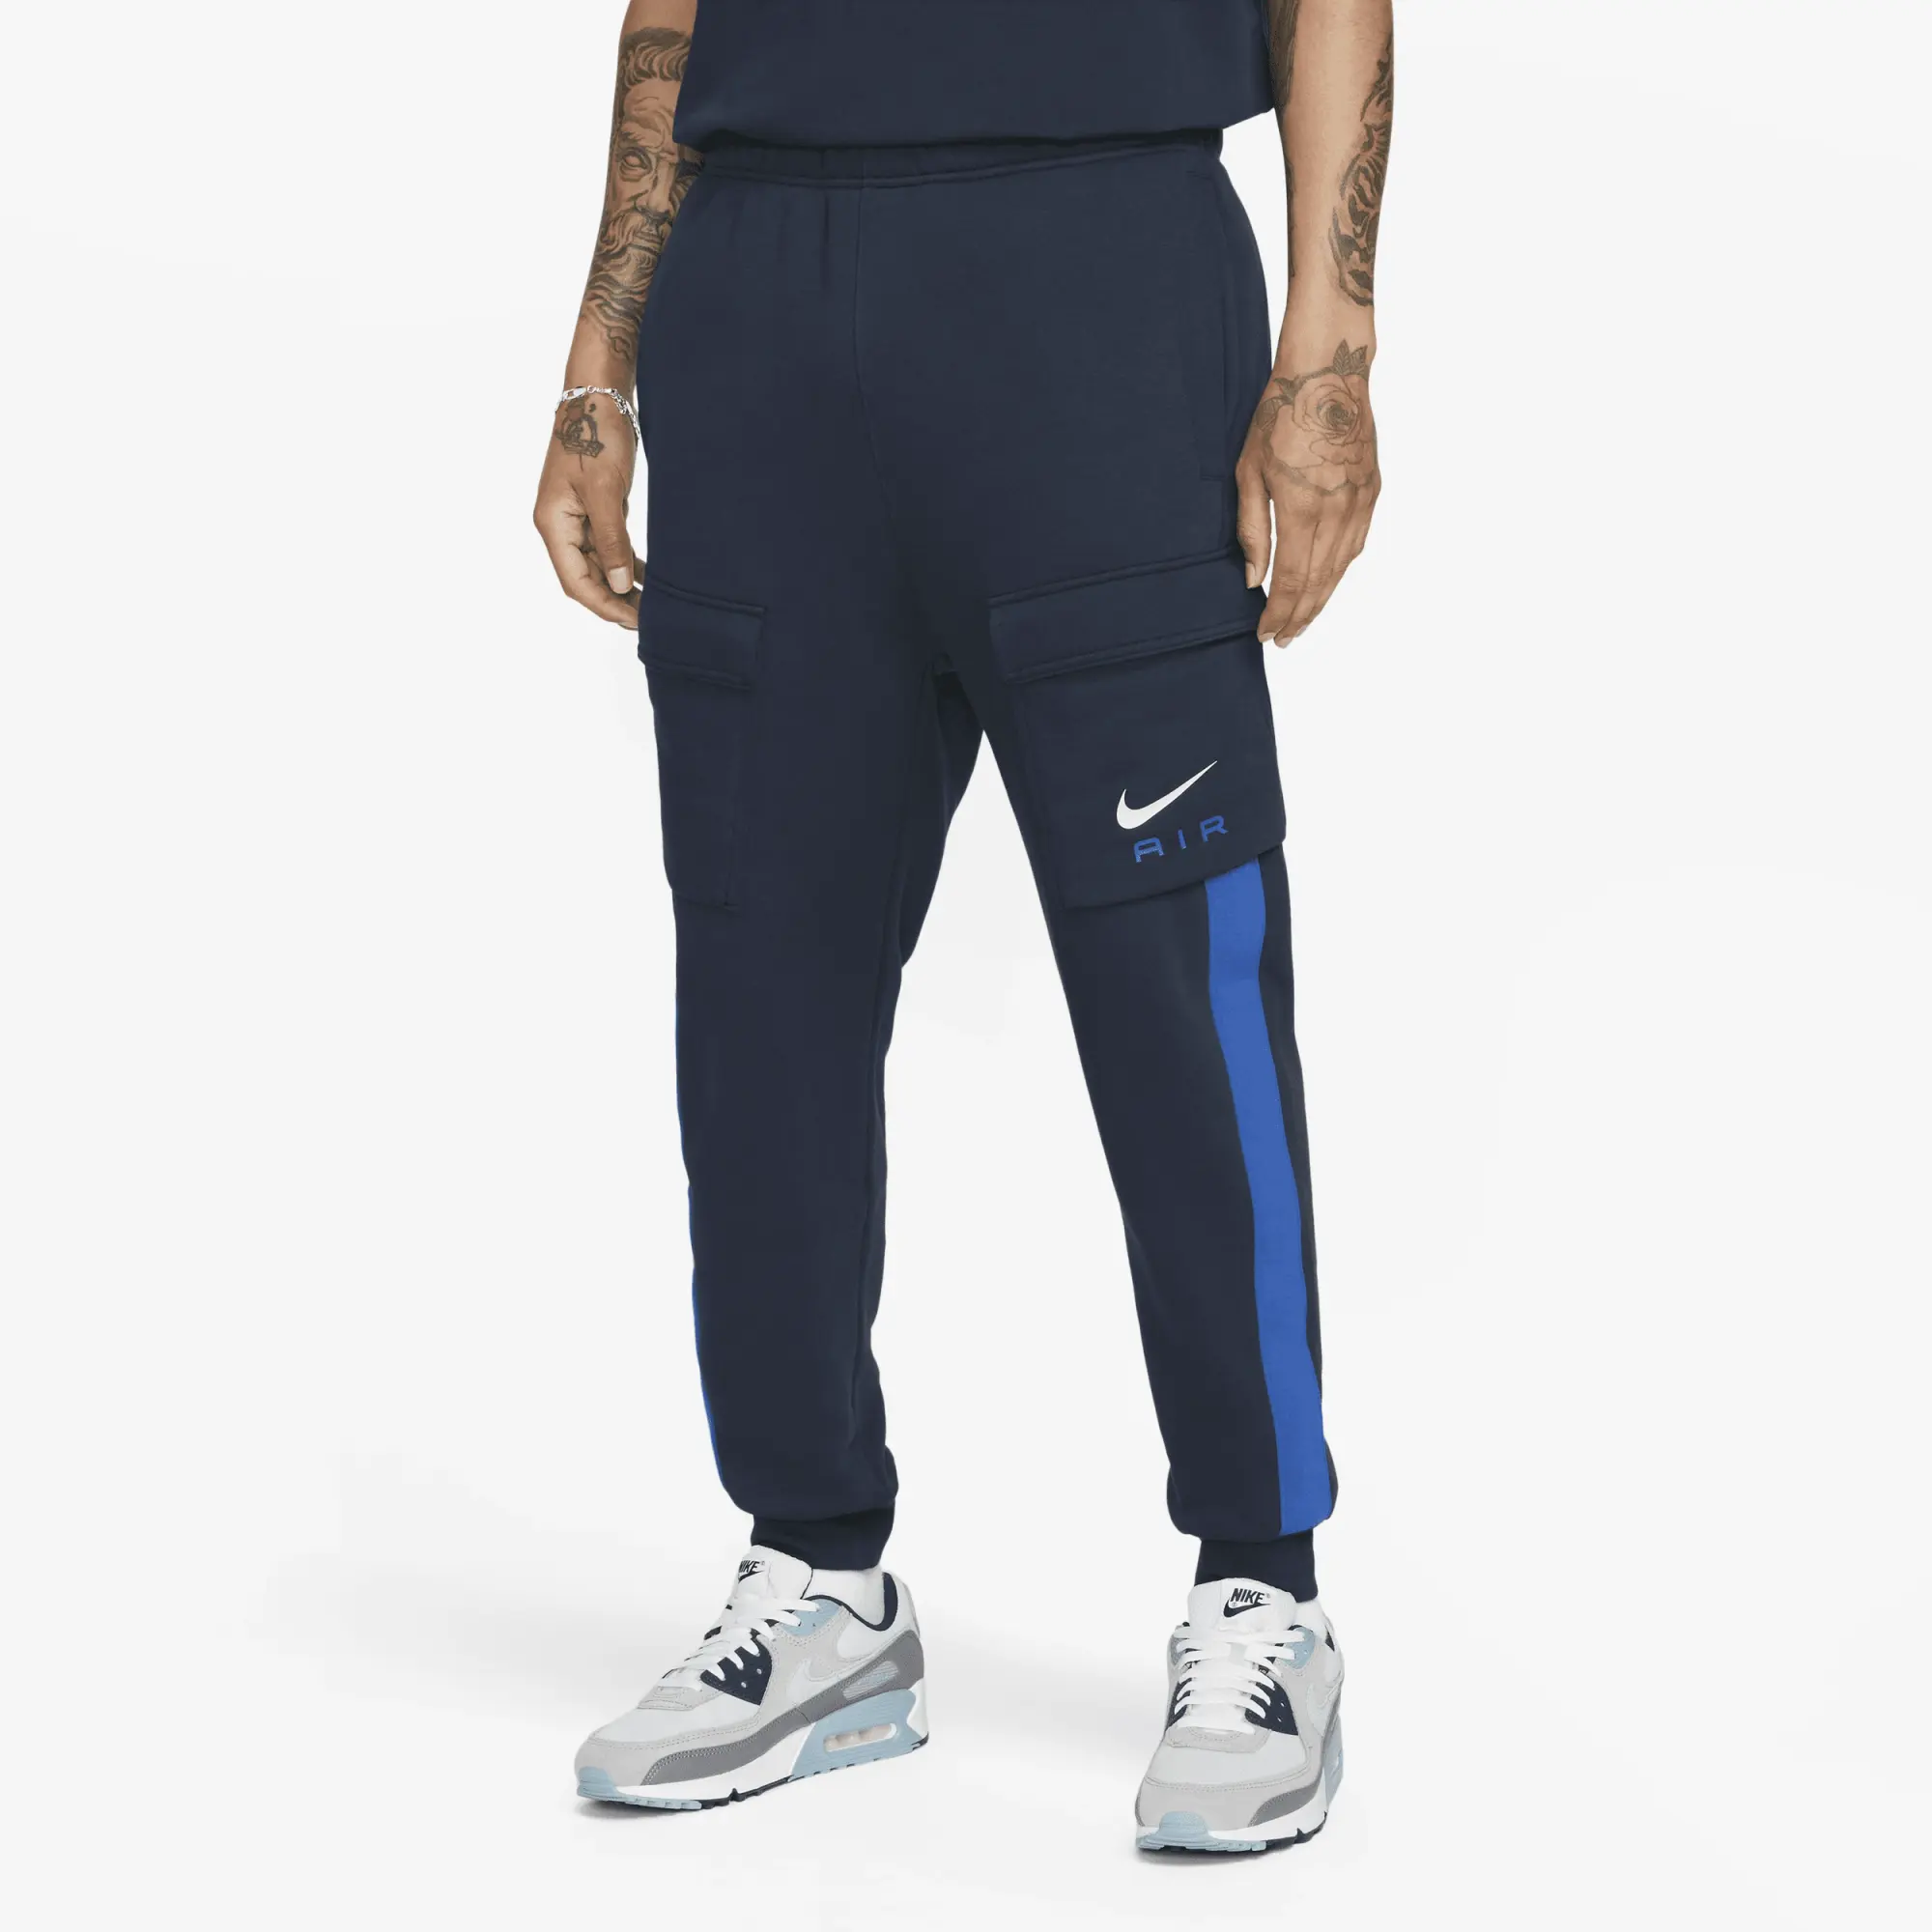 Nike Air Flc Pant Sn41 - Blue